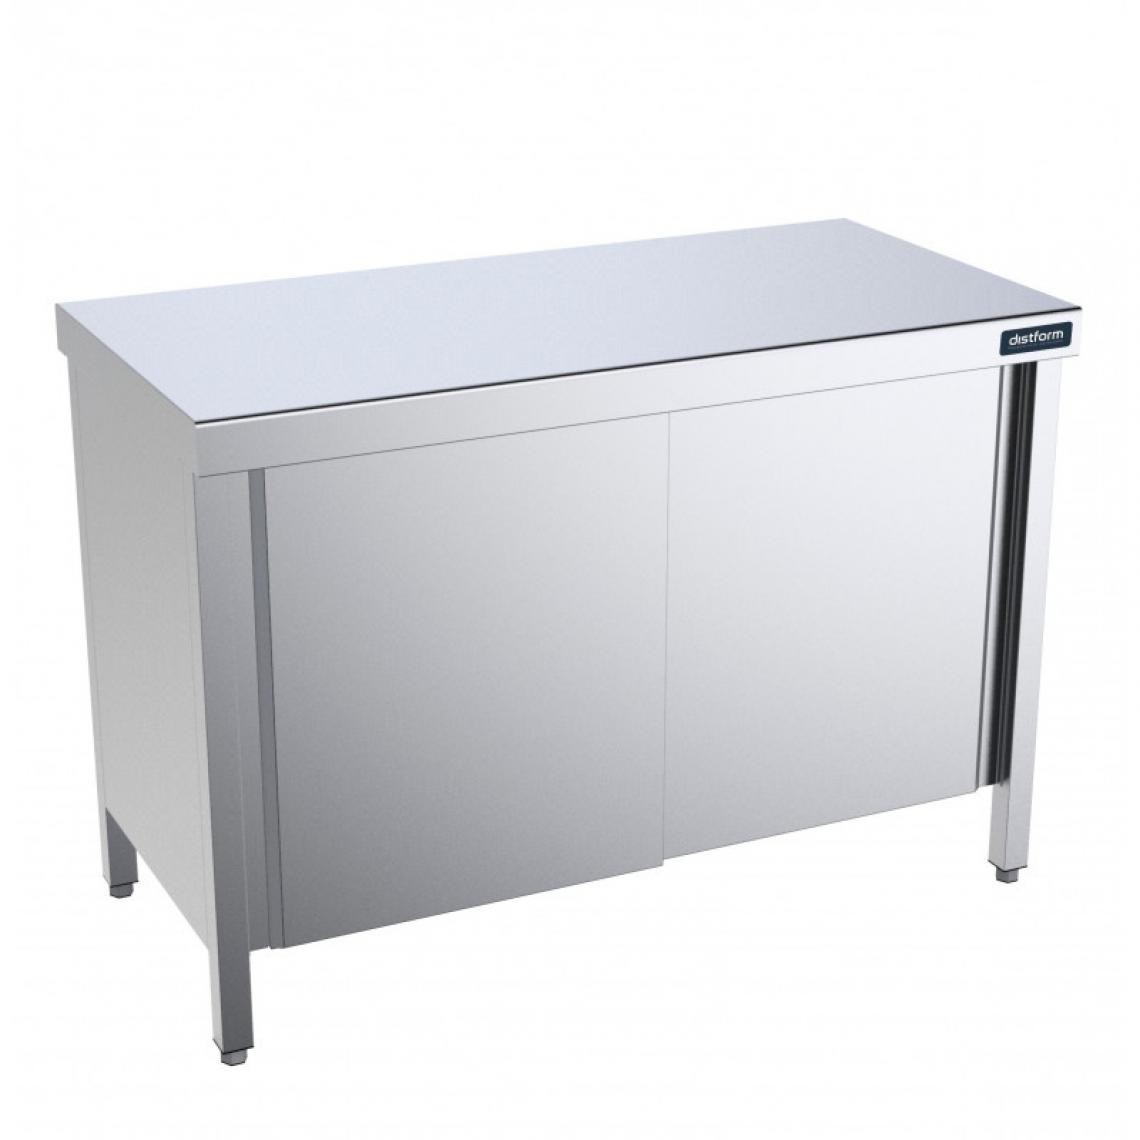 DISTFORM - Table Centrale avec Portes Battantes Profondeur 600mm - Distform - Acier inoxydable2400x600 - Tables à manger